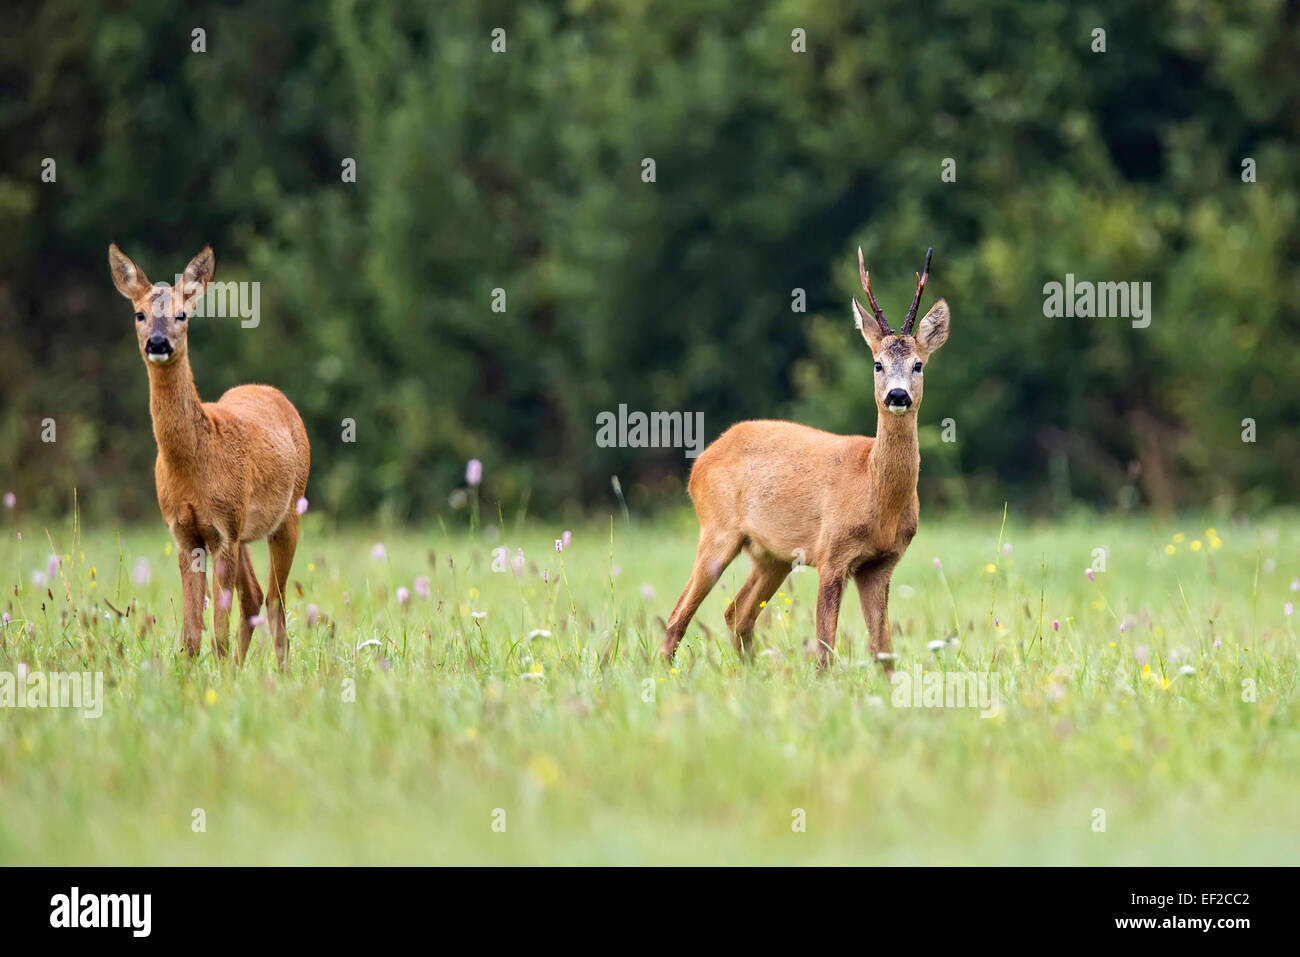 Buck deer with roe-deer in the wild Stock Photo